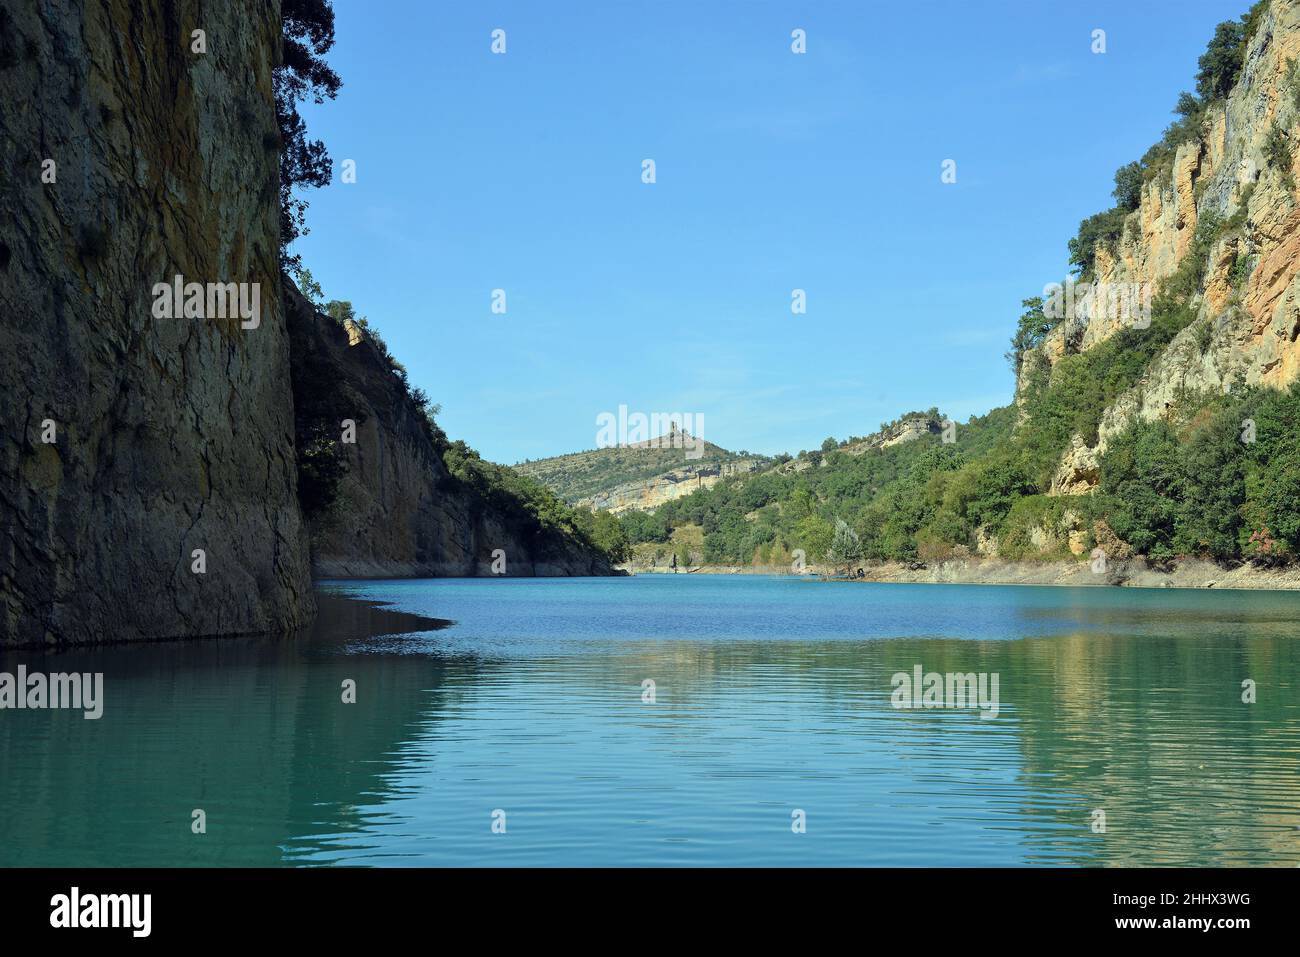 Gorge du Mont-rebei dans la région de Pallars Jussa, province de Lleida, Catalogne, Espagne Banque D'Images